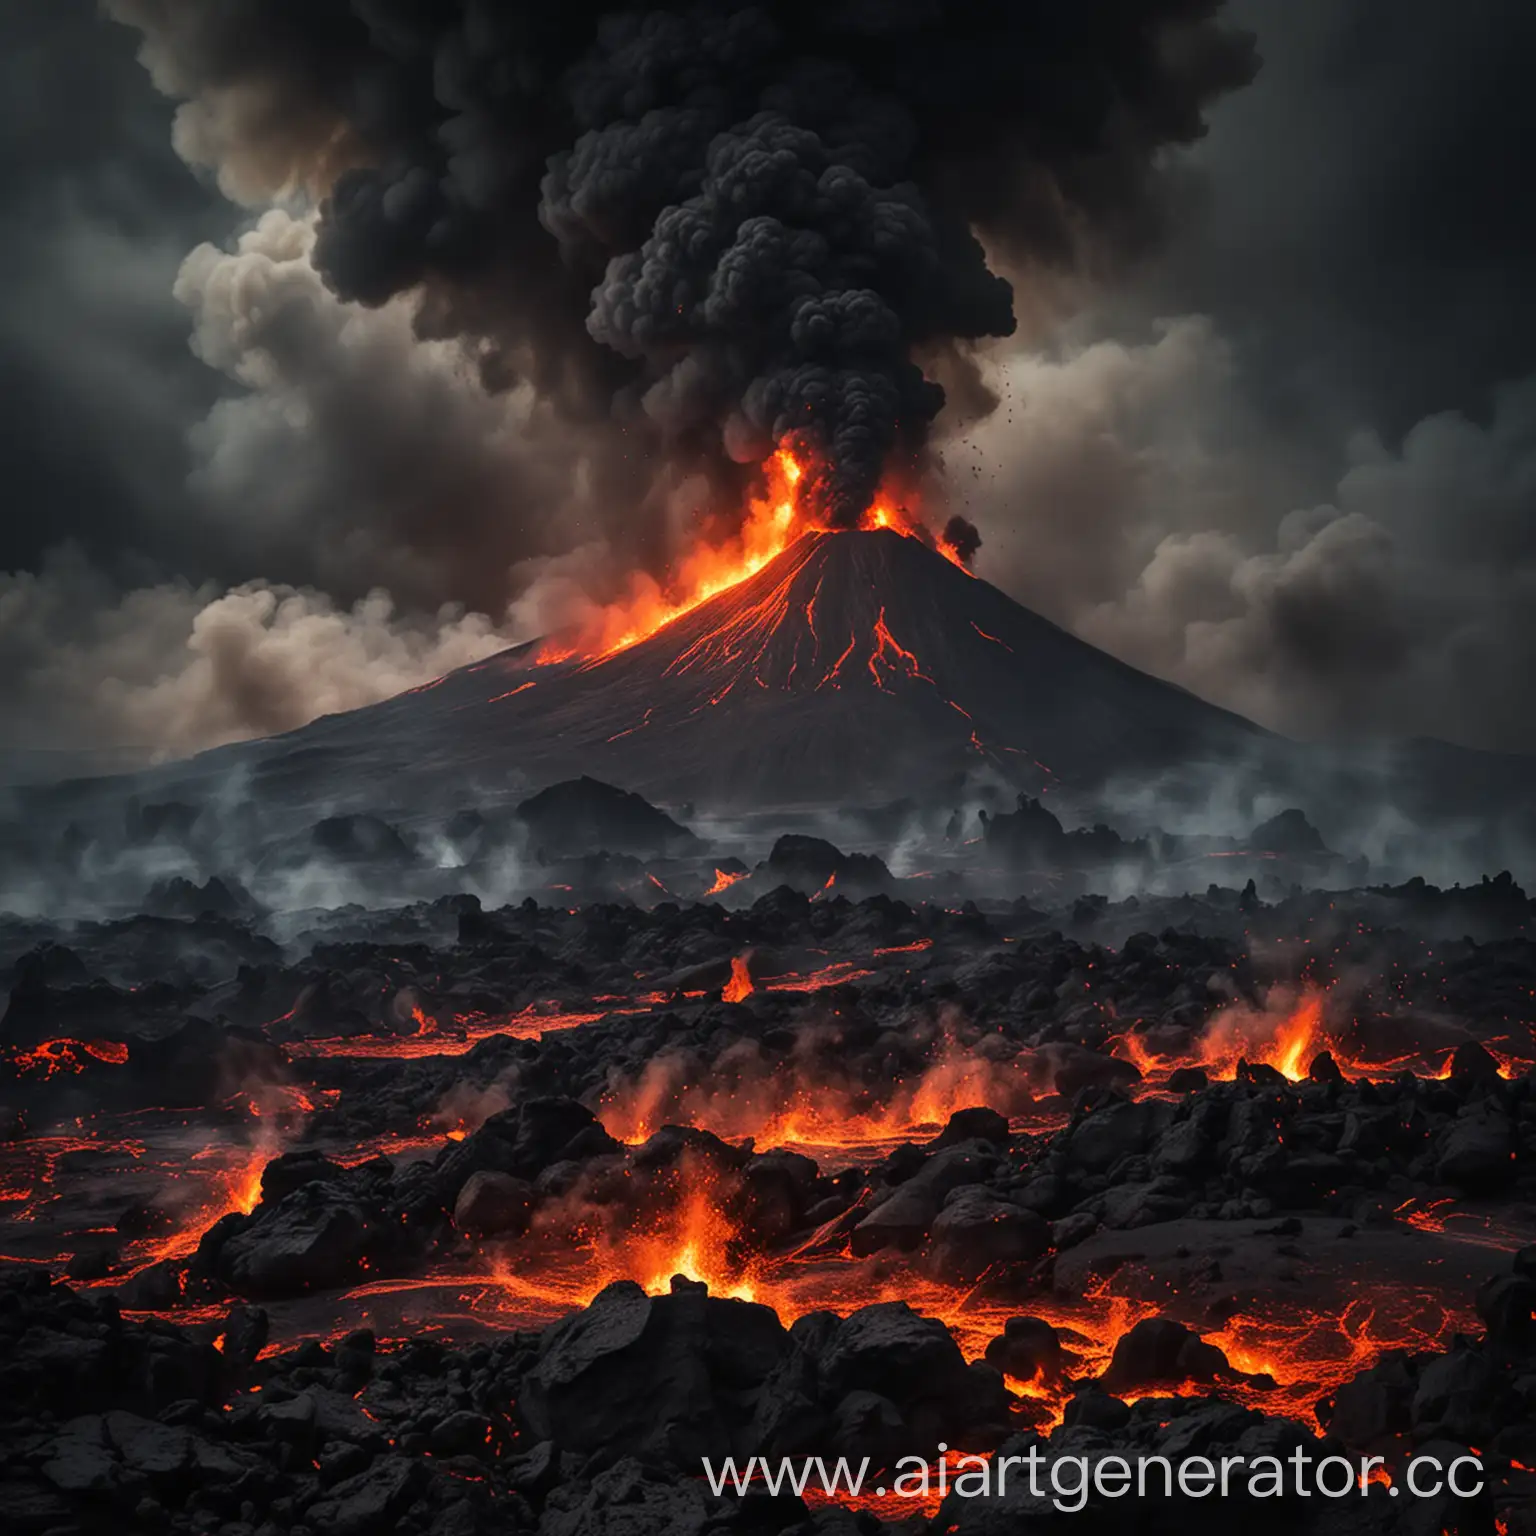 мрачная местность в огне, кругом вулканы, местами лава, все в дыму